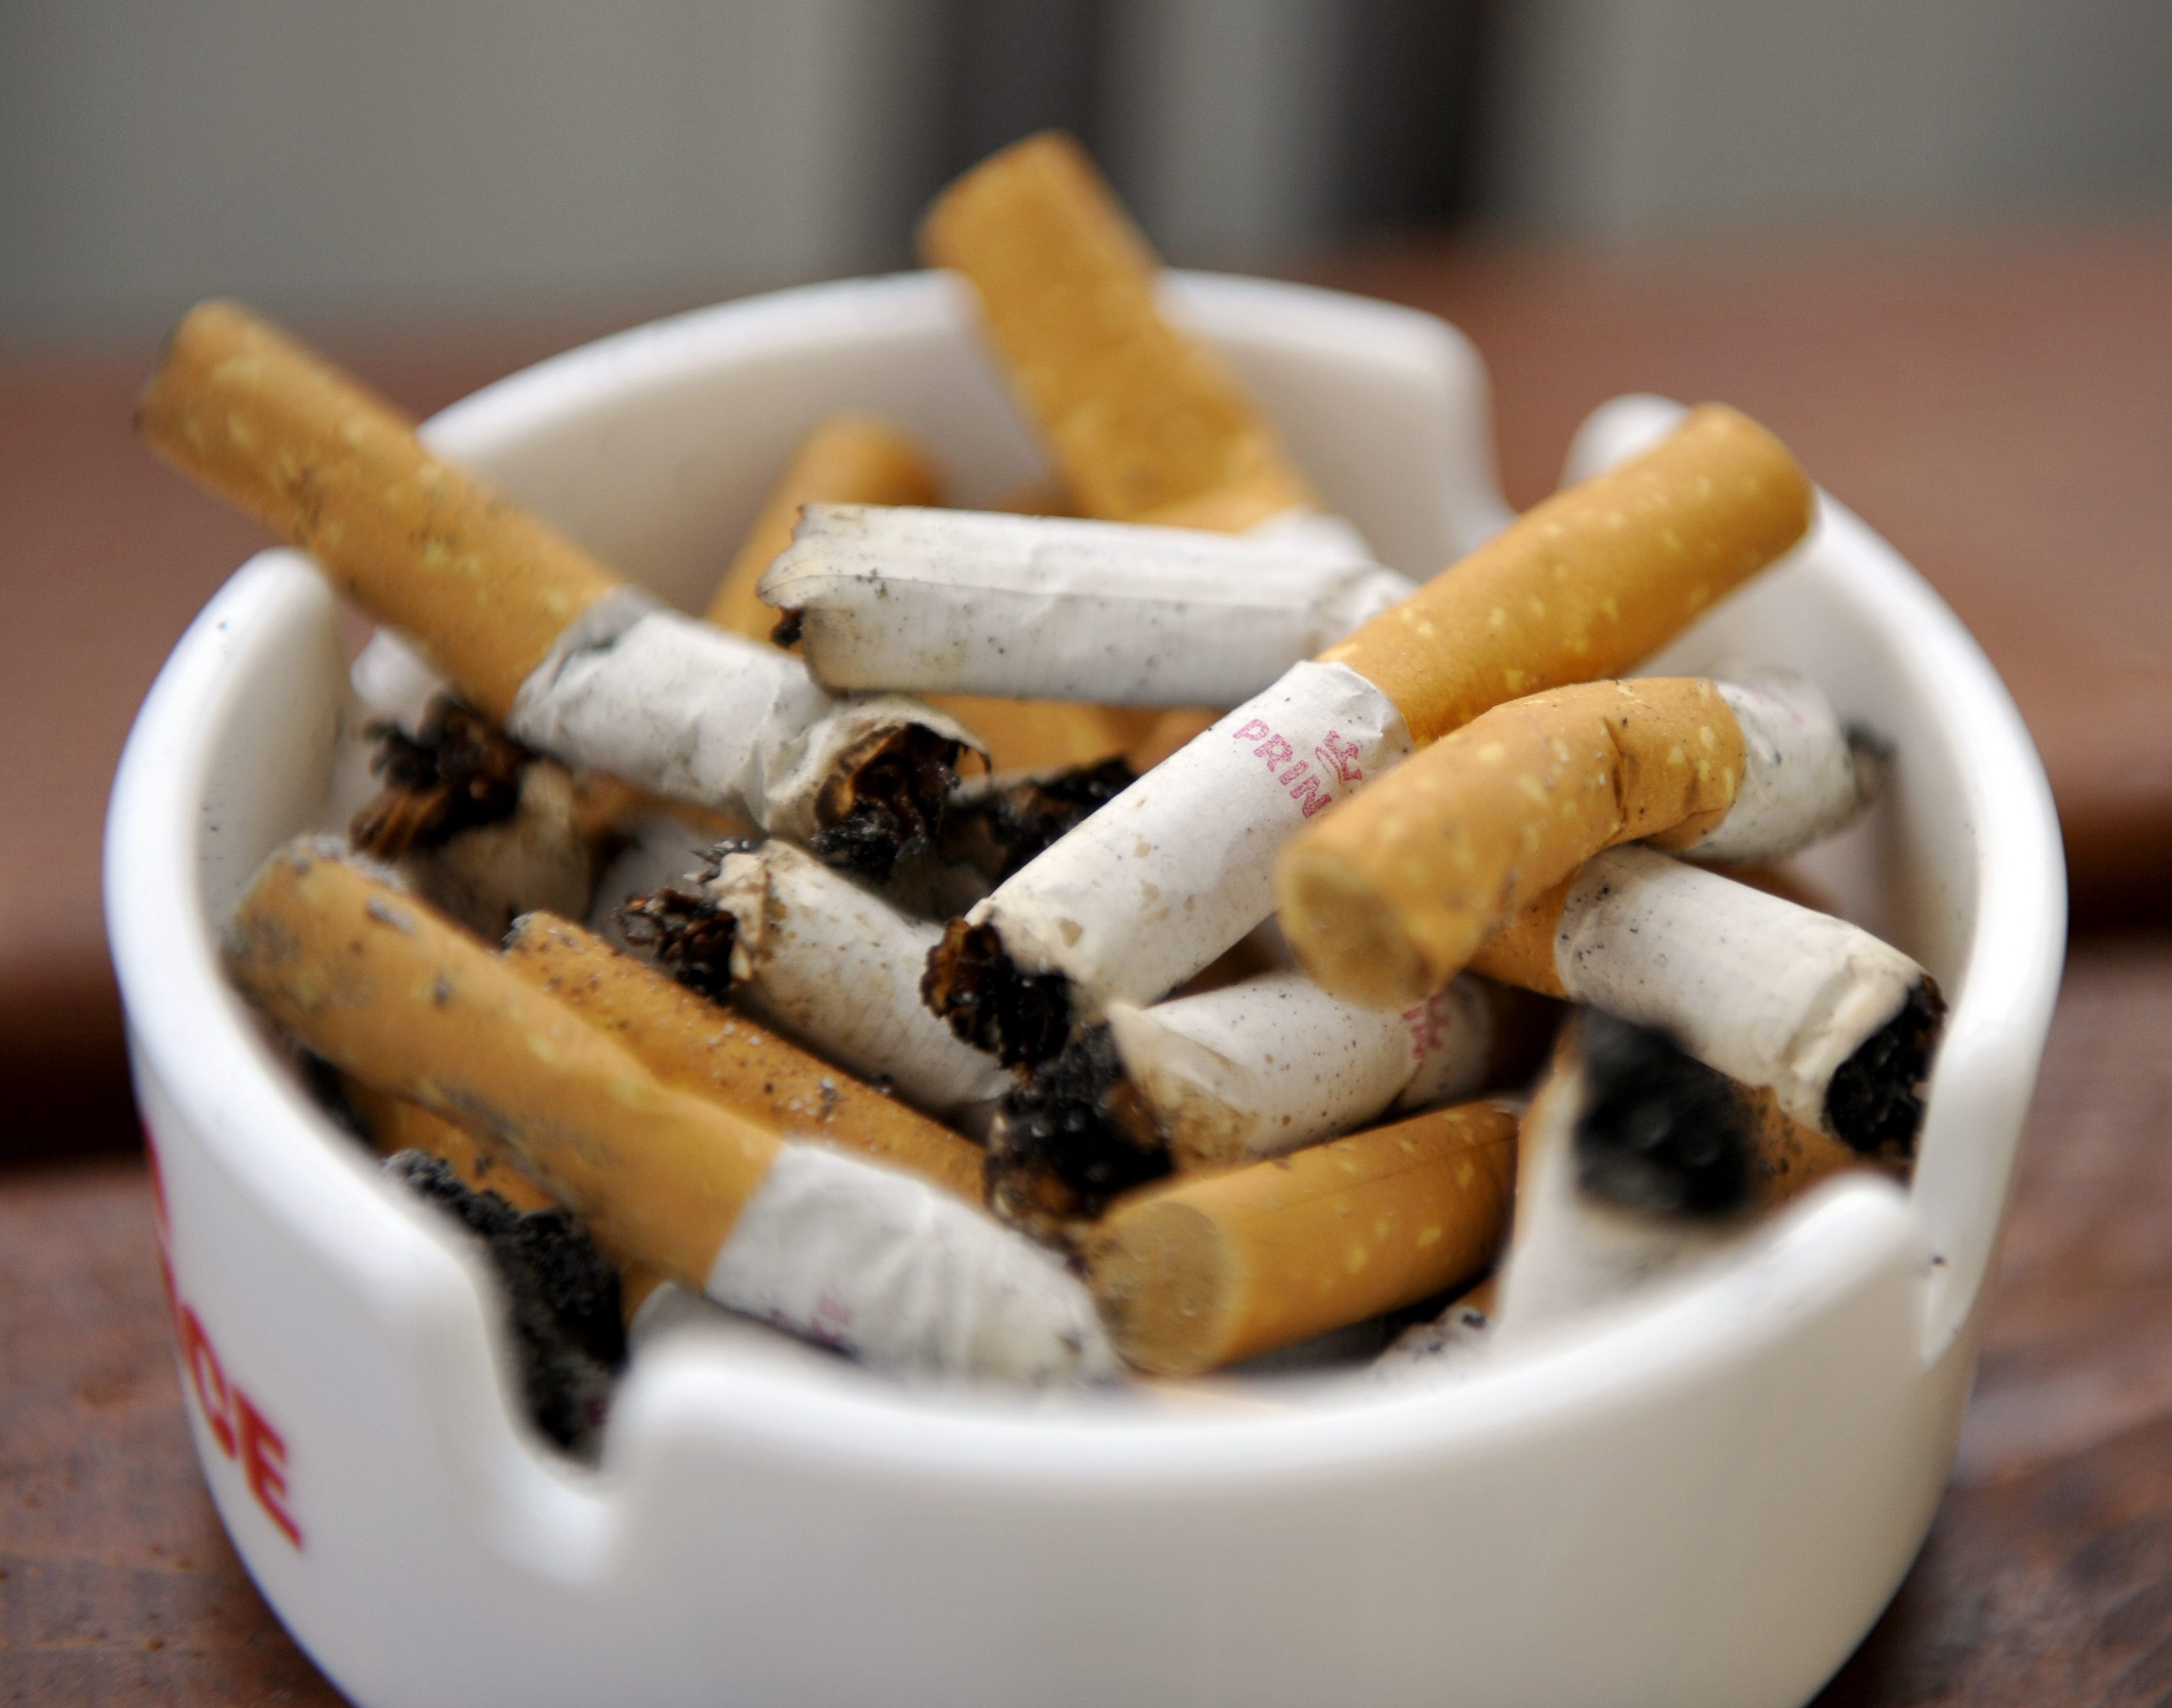 Årligen dör 5,4 miljoner människor av tobaksbruk.